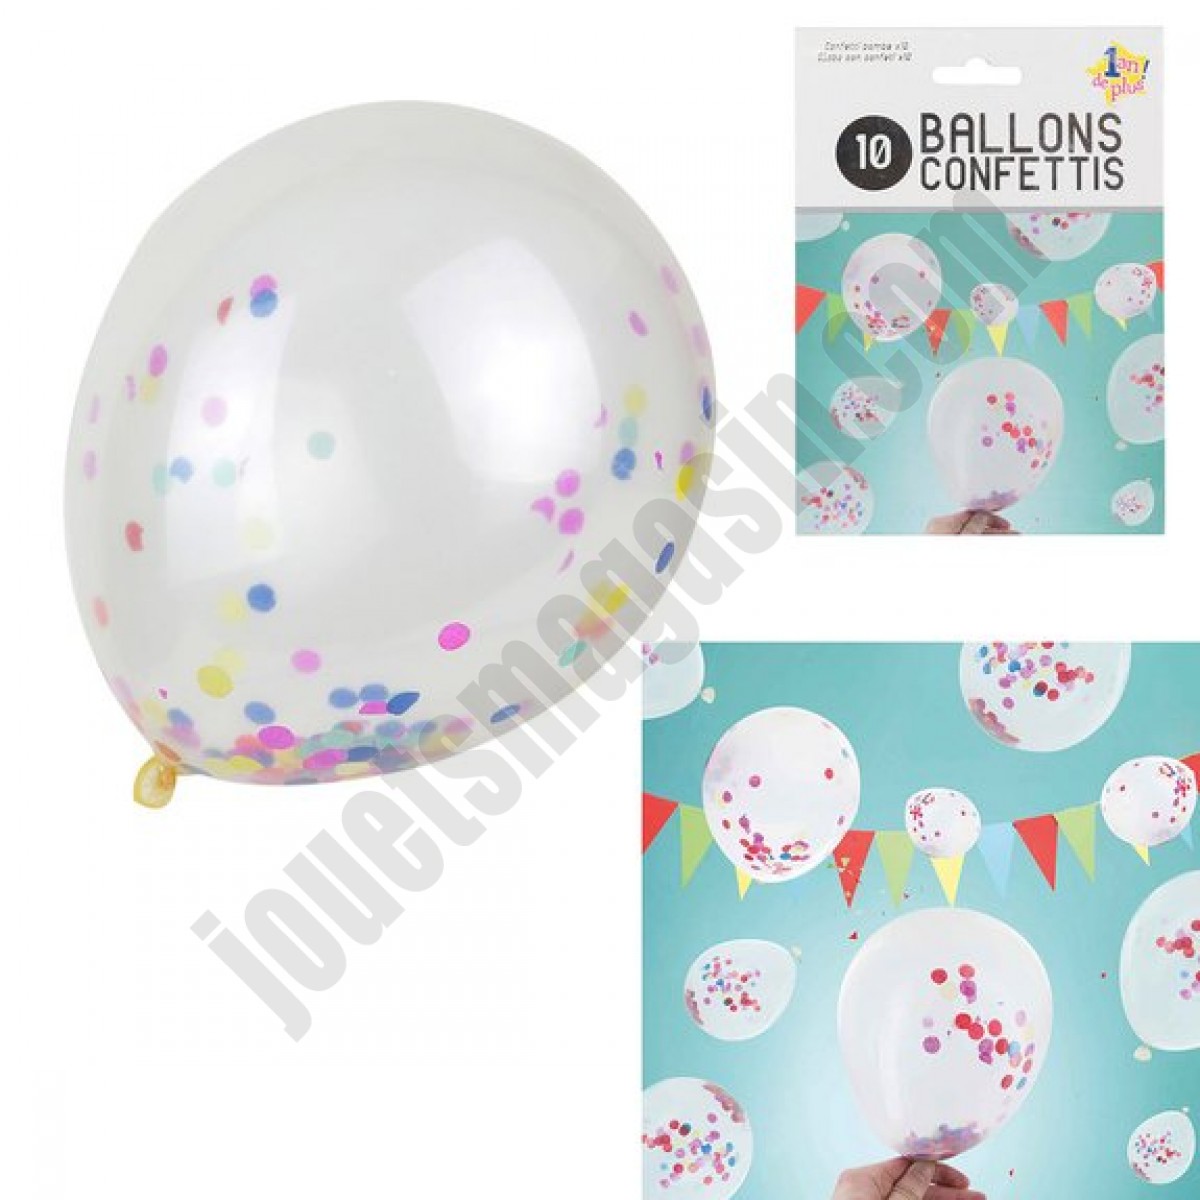 10 ballons confettis multicolores En promotion - 10 ballons confettis multicolores En promotion